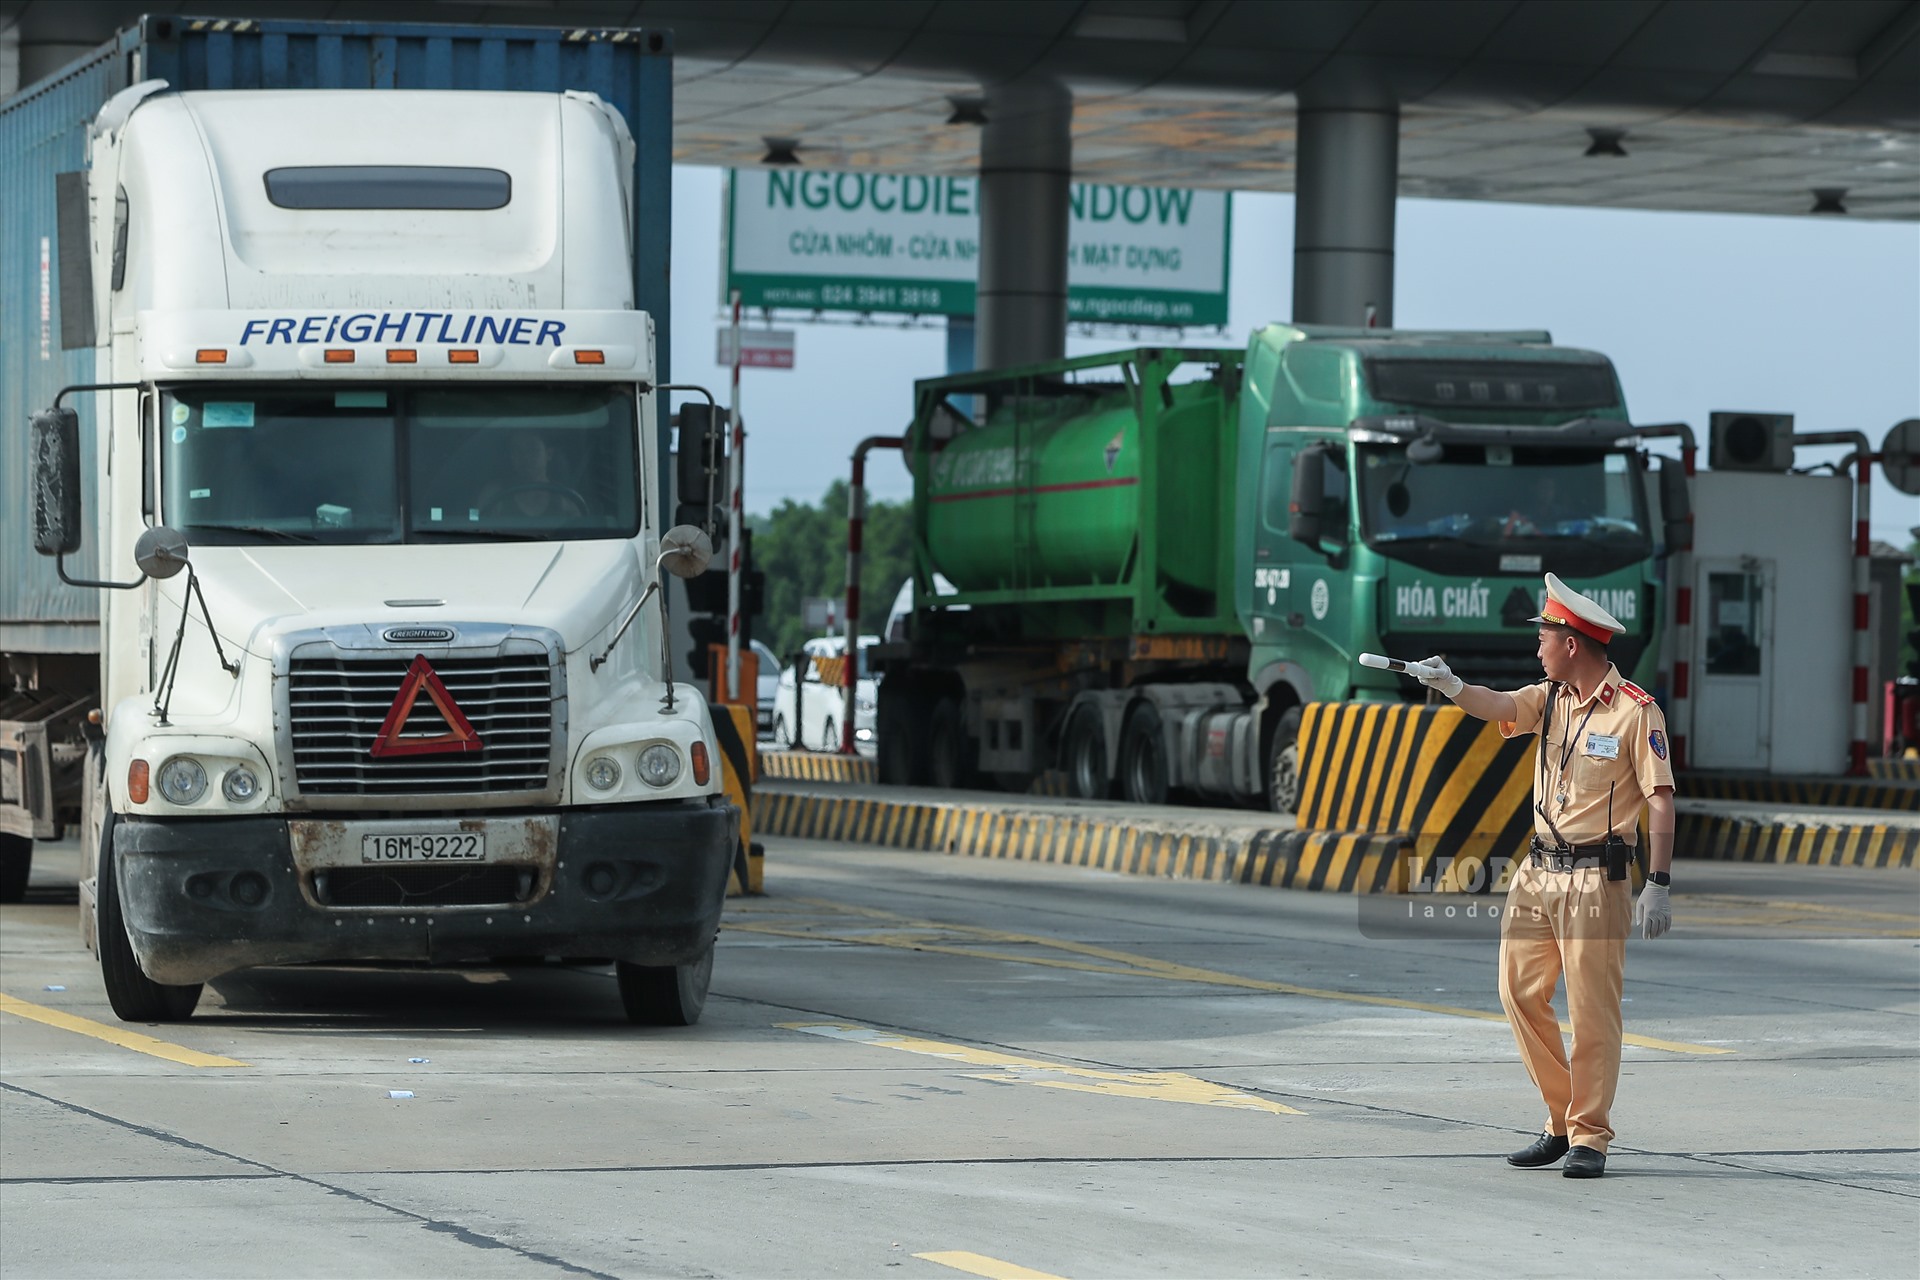 Tại Km10 cao tốc Hà Nội - Hải Phòng, lực lượng CSGT bắt đầu thực hiện việc dừng xe các phương tiện để kiểm tra.